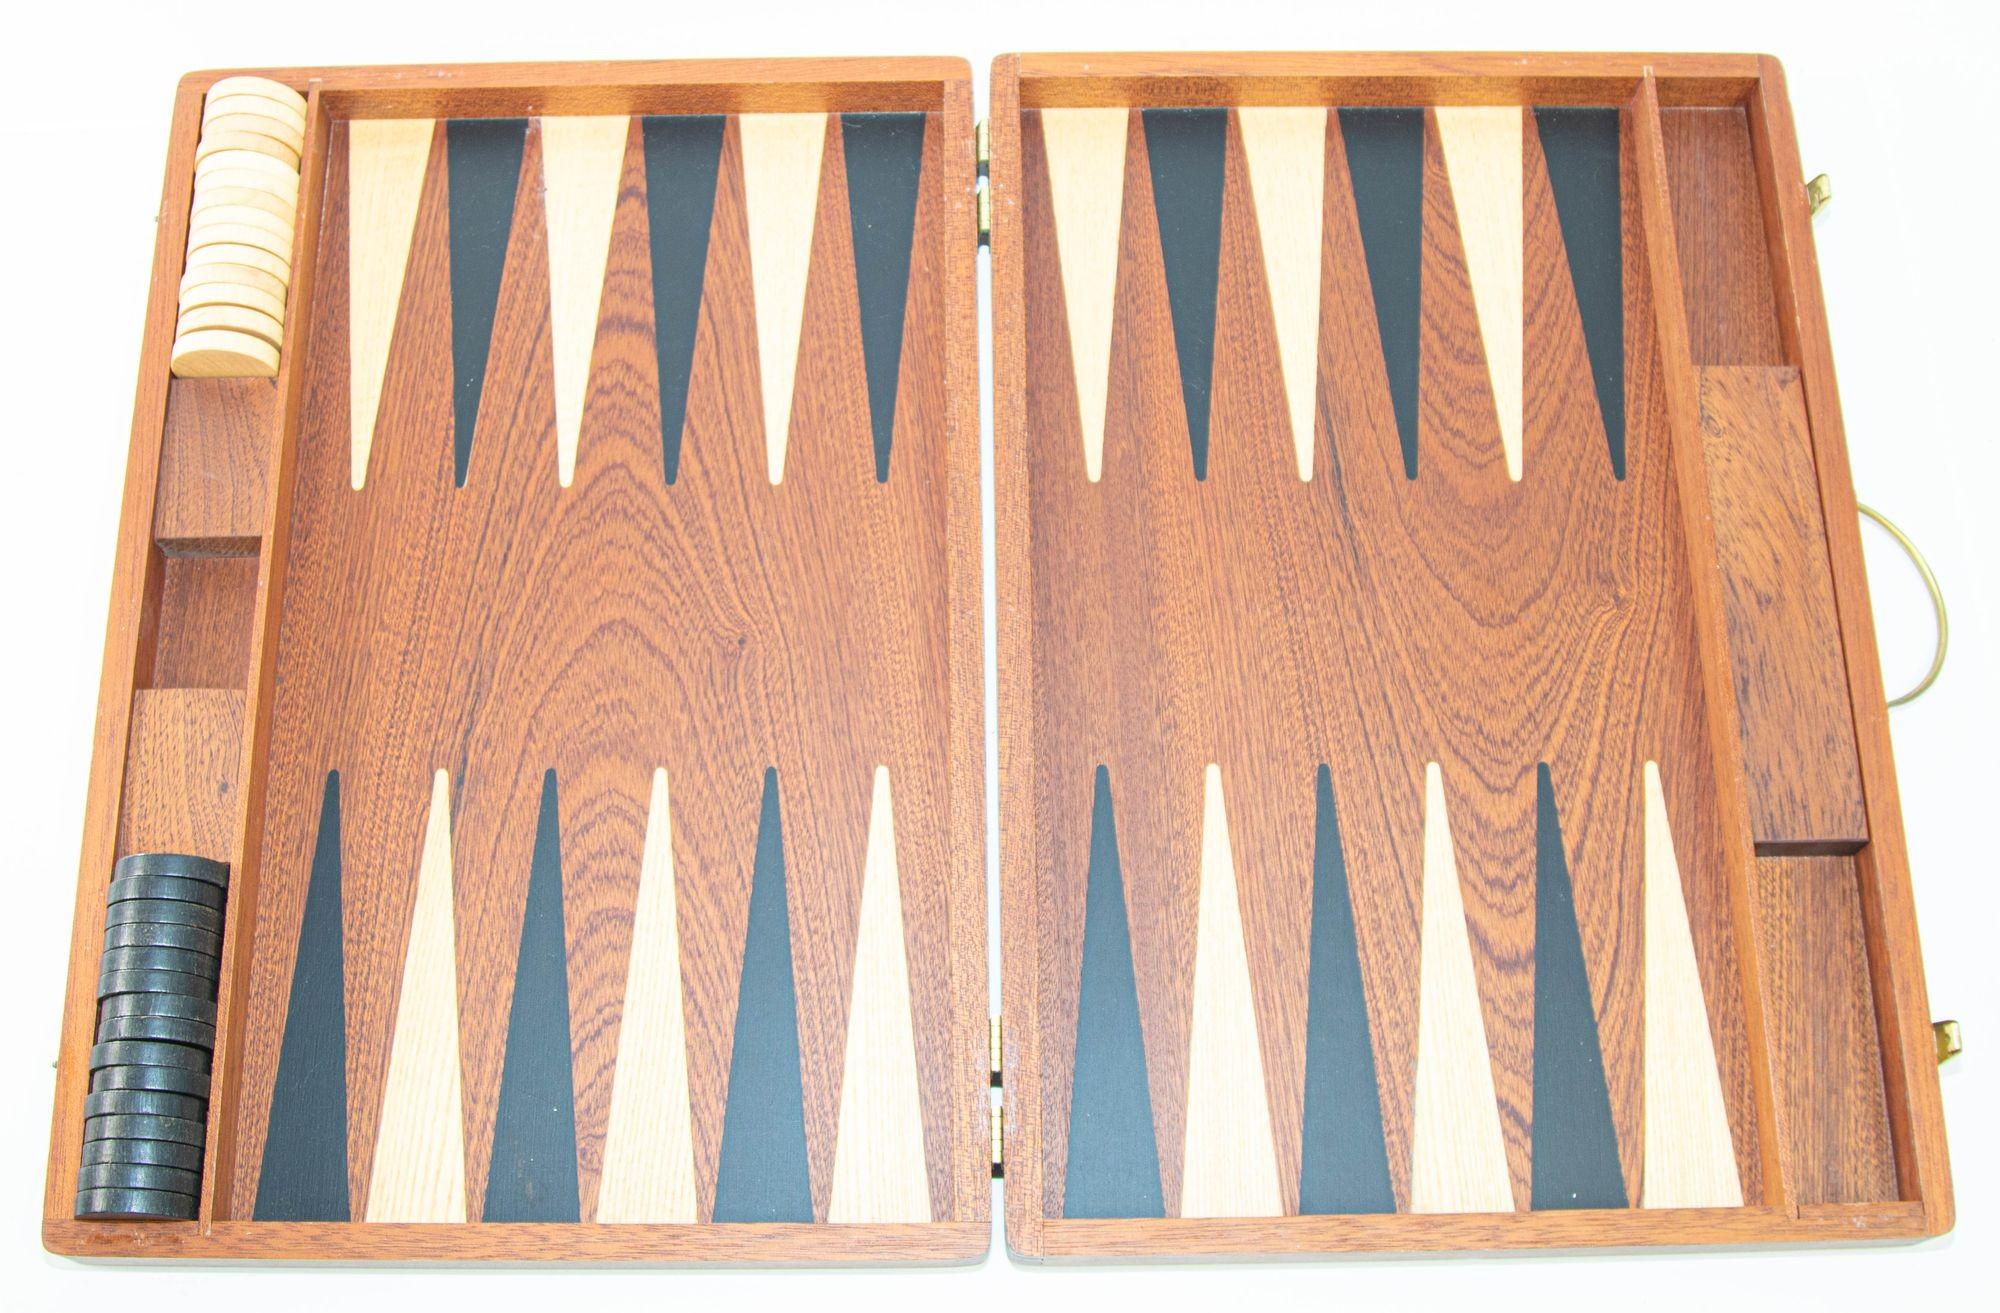 Vintage Wood Backgammon Set Spielbox, um 1950
Vintage Eiche Holz Backgammon-Spiel in Fall gesetzt.
Großes handgefertigtes, tragbares Backgammon-Brettspiel aus Holz mit Spielsteinen aus Holz.
Schönes Backgammon aus geöltem Naturholz mit elegantem